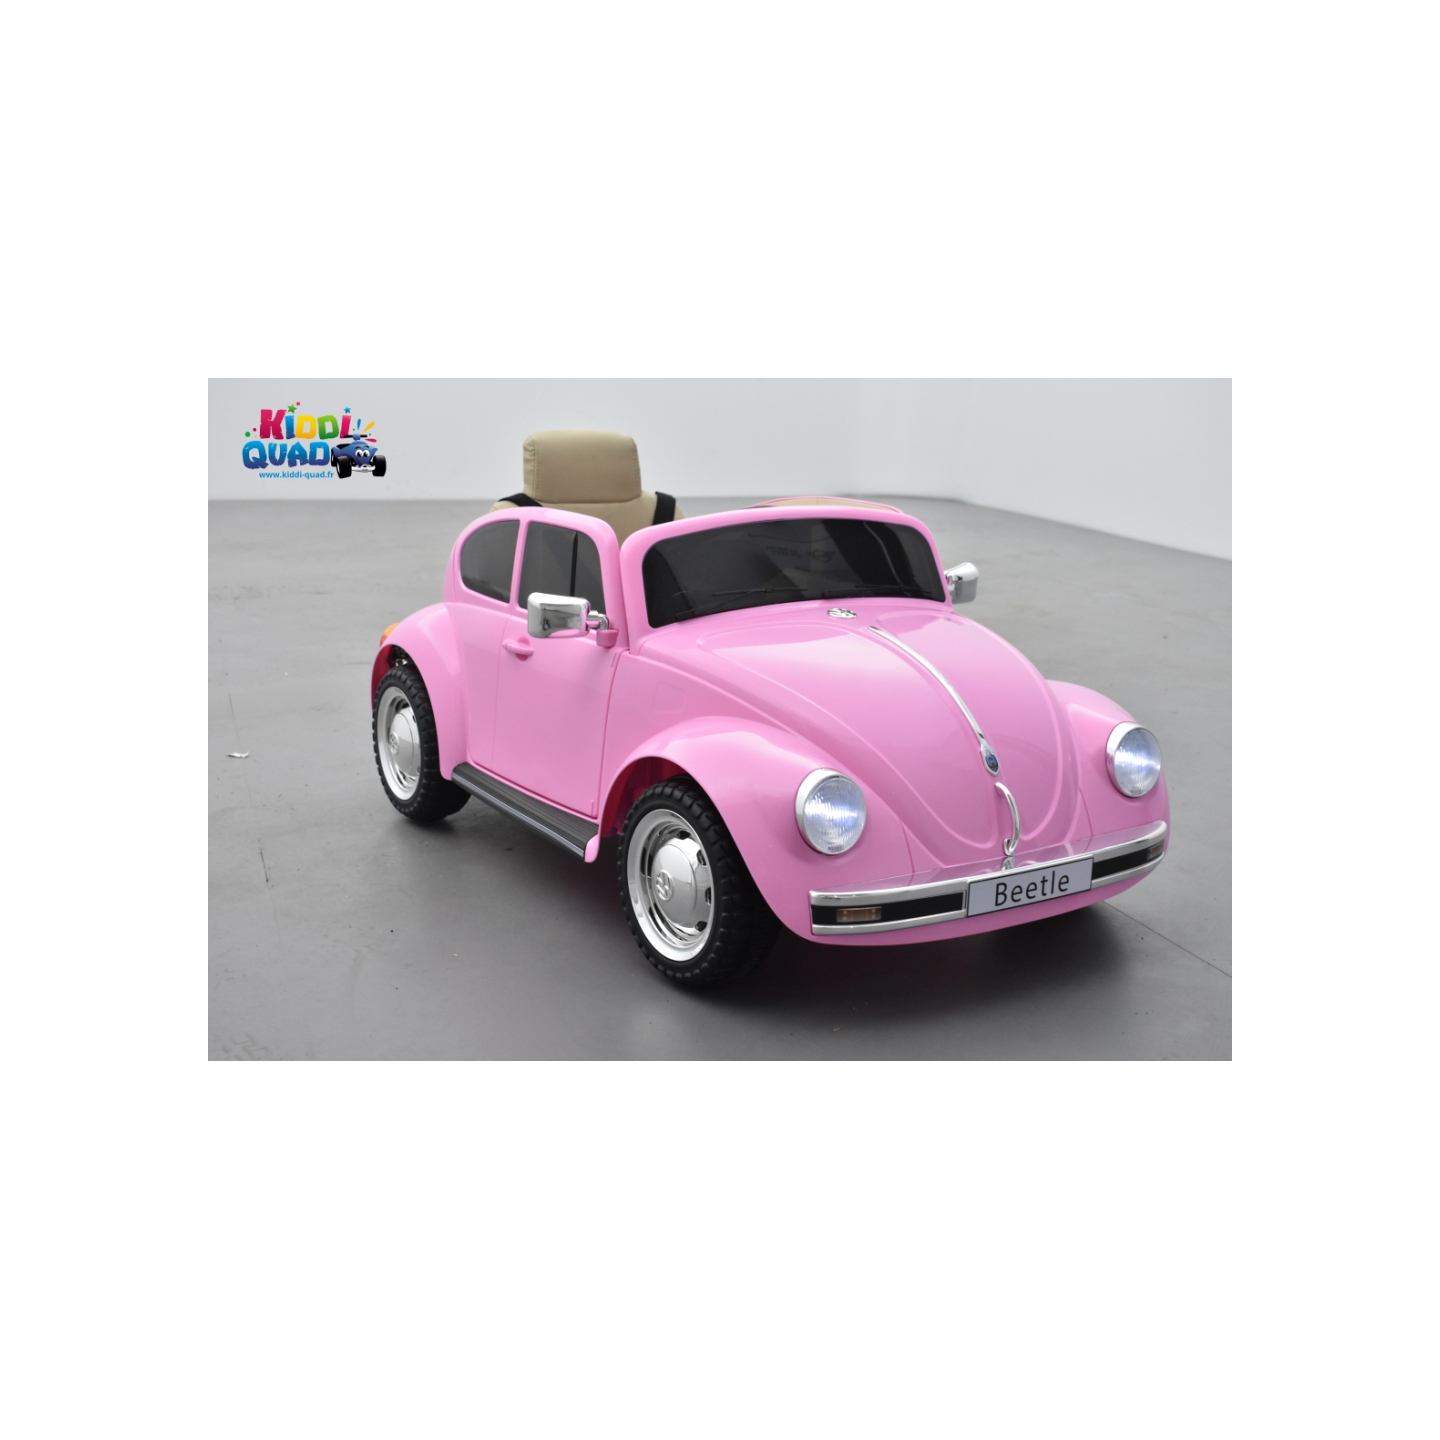 Volkswagen Coccinelle Dune Beetle blanc, 12 volts, voiture électrique  pour enfant